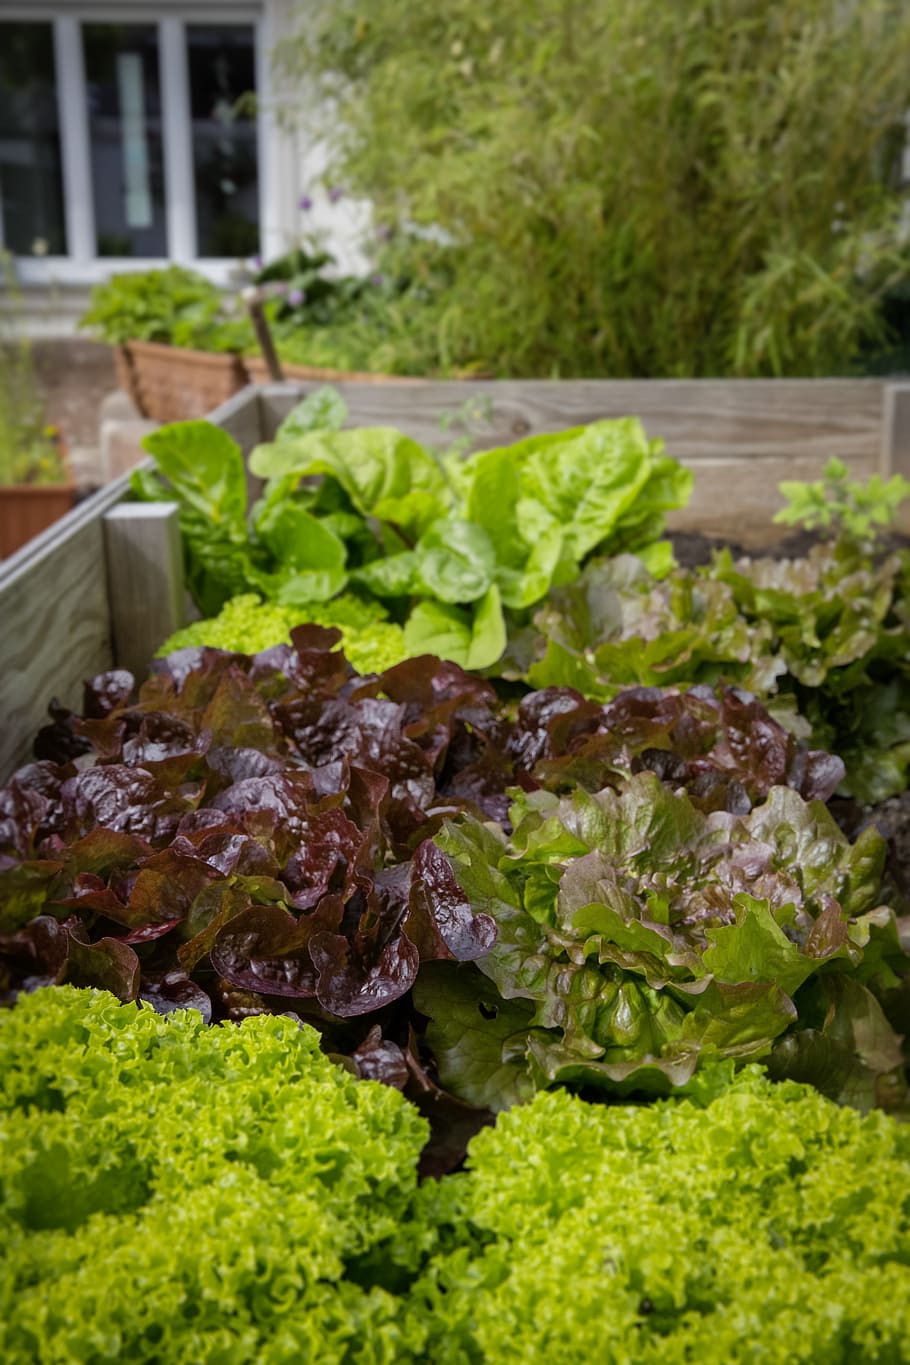 verde, roxo, folheado, plantas, jardinagem urbana, regional, saudável, salada, legumes, cultivo